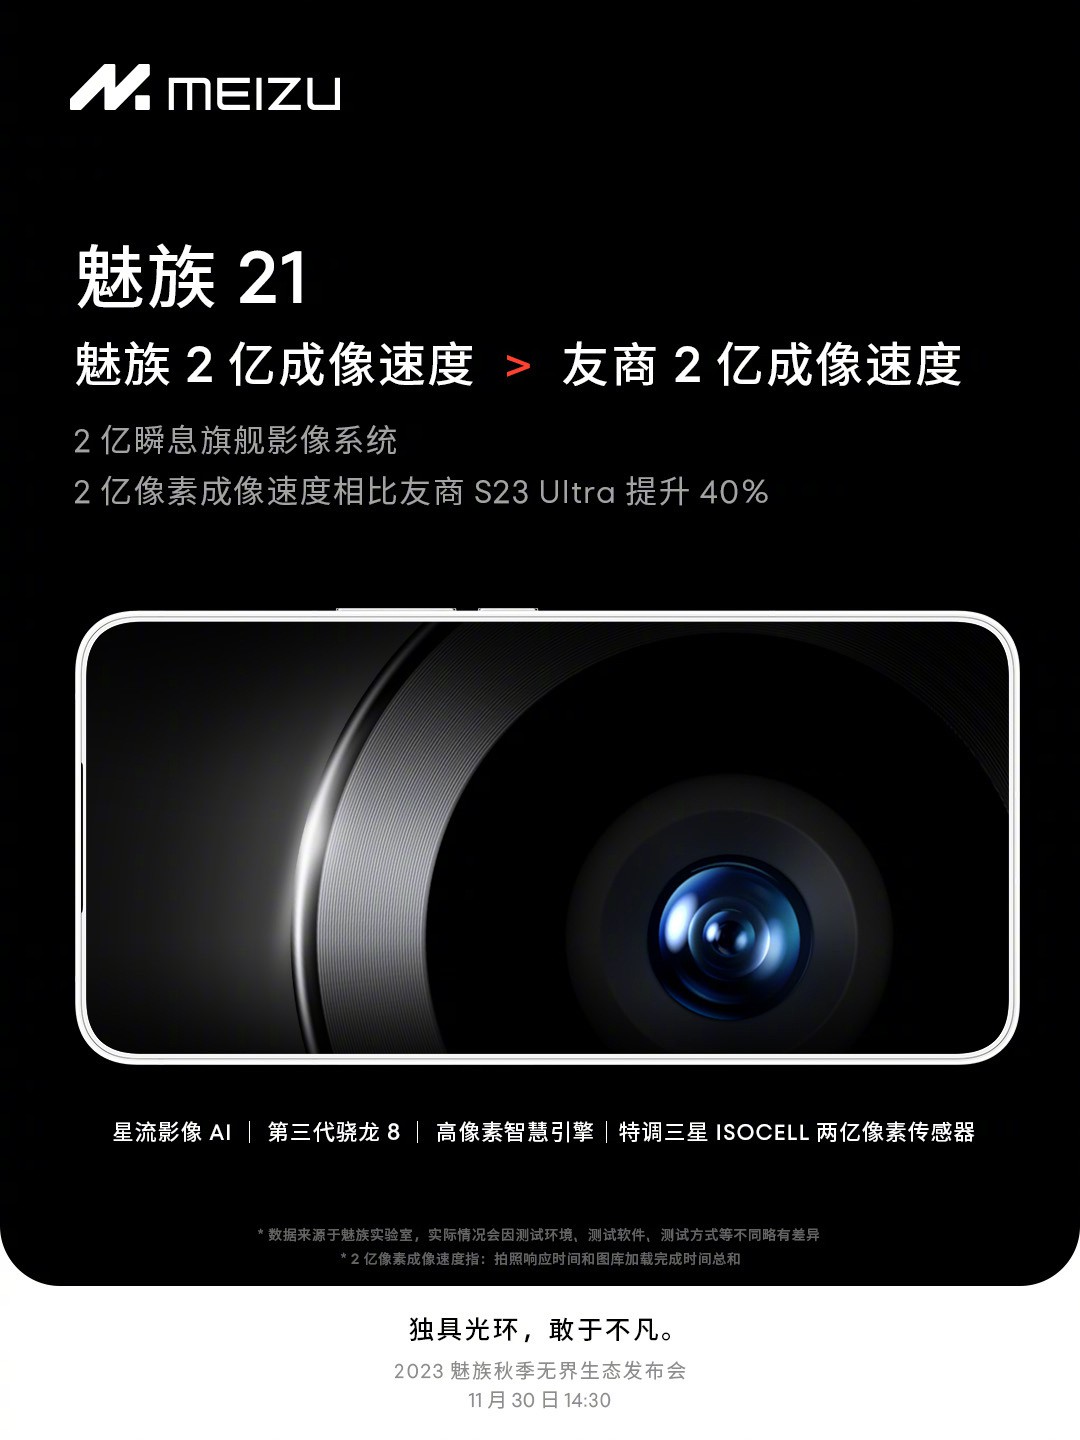 meizu-m21-camera-specs